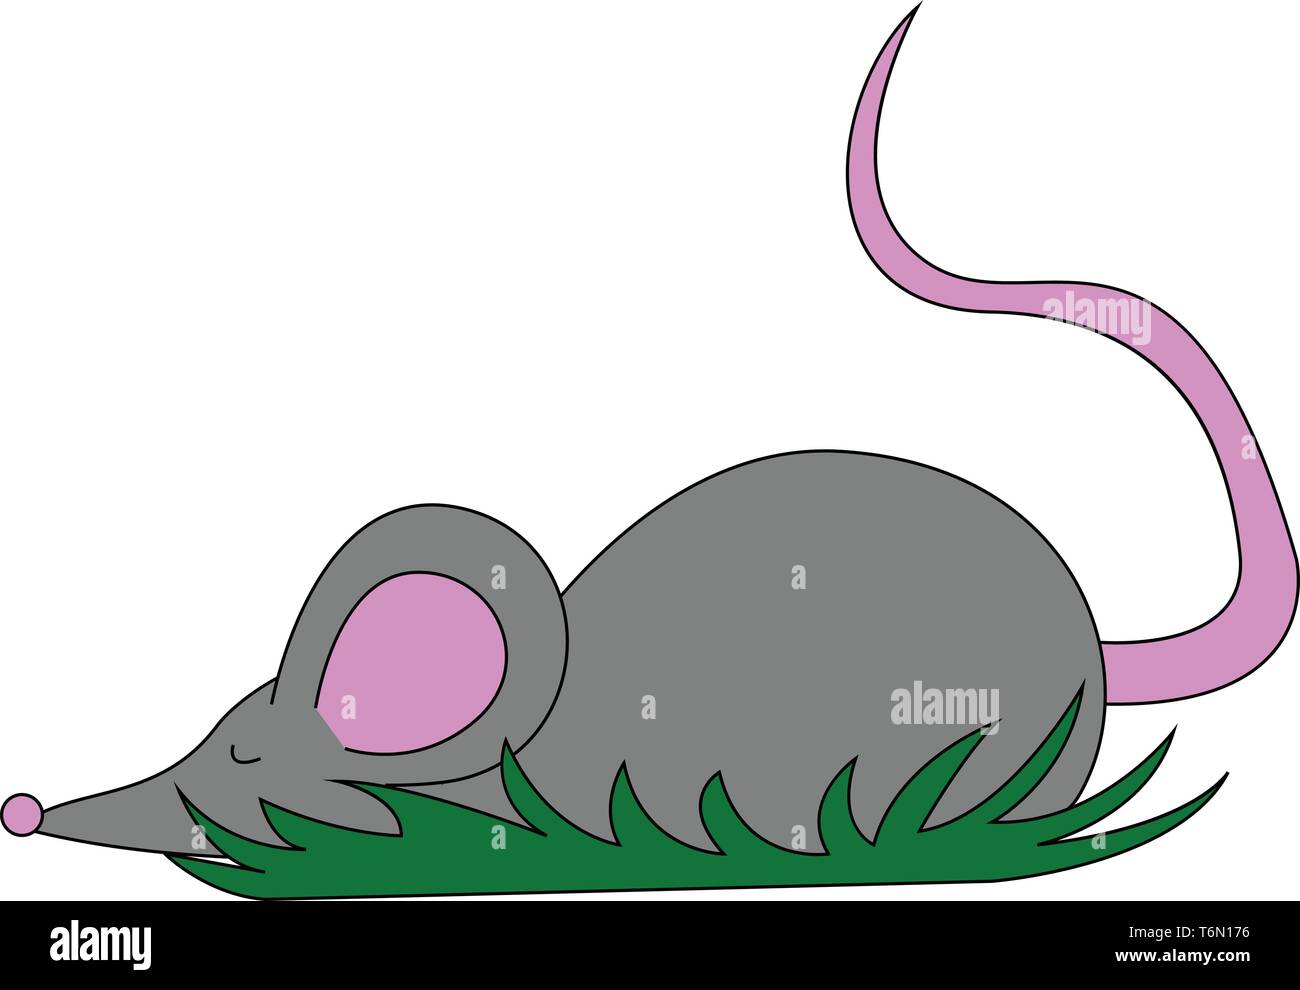 Cartoon graue Maus liegen auf der Oberfläche mit den Augen hat einen spitzen Schnauze schwarze Nase grosse rosa Ohren und einem langen schwarzen Schwanz Vektor in der Farbe der Zeichnung oder Il Stock Vektor